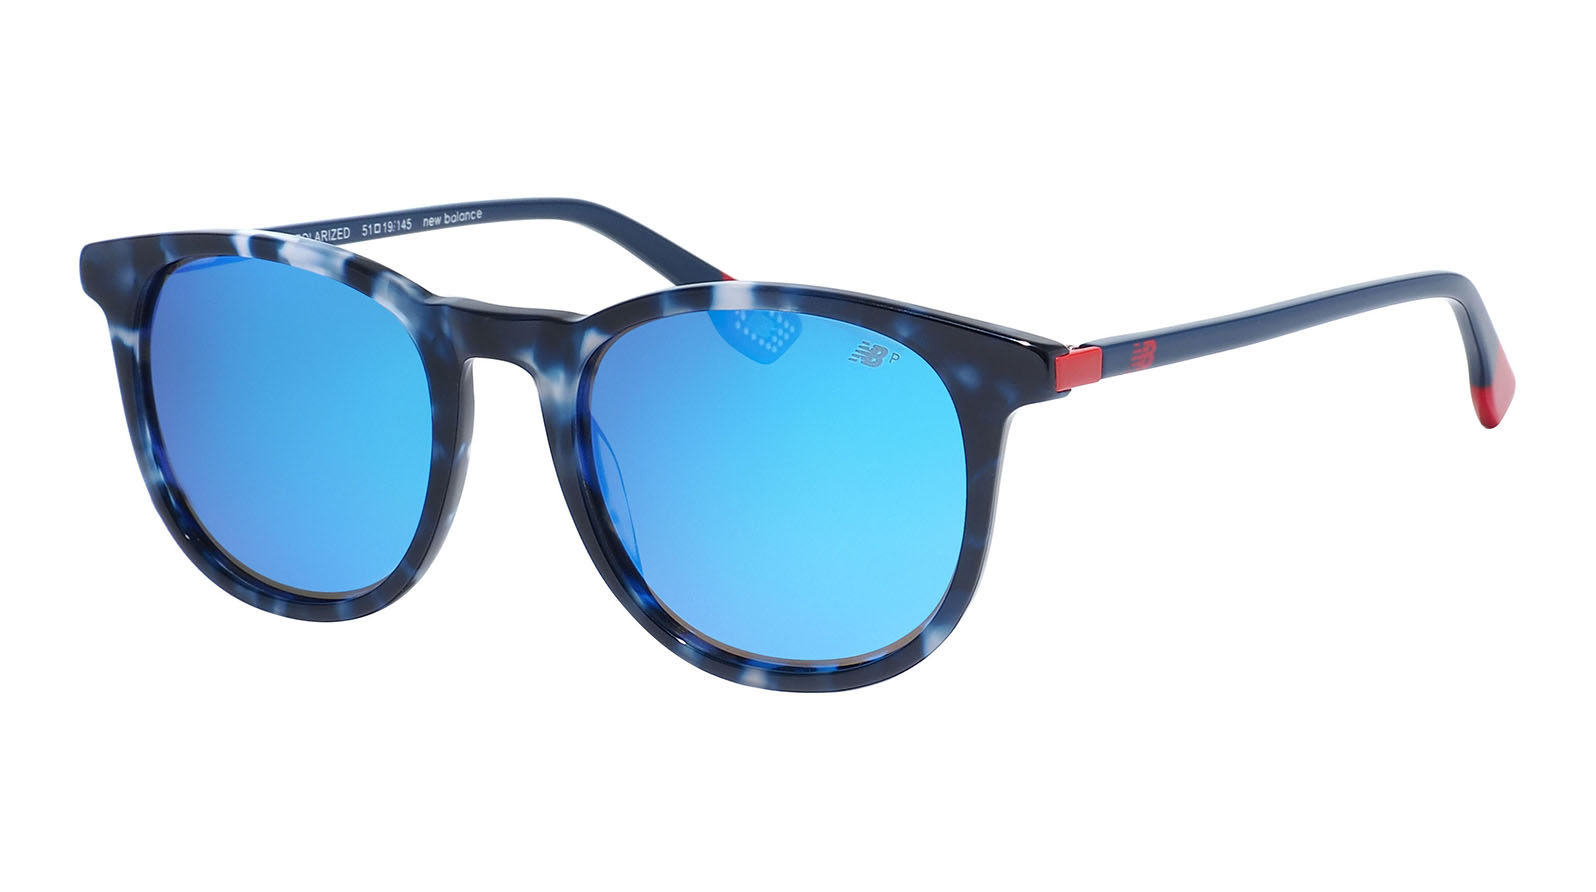 New Balance 6070 1 grand voyage солнцезащитные очки с поляризацией и уф защитой